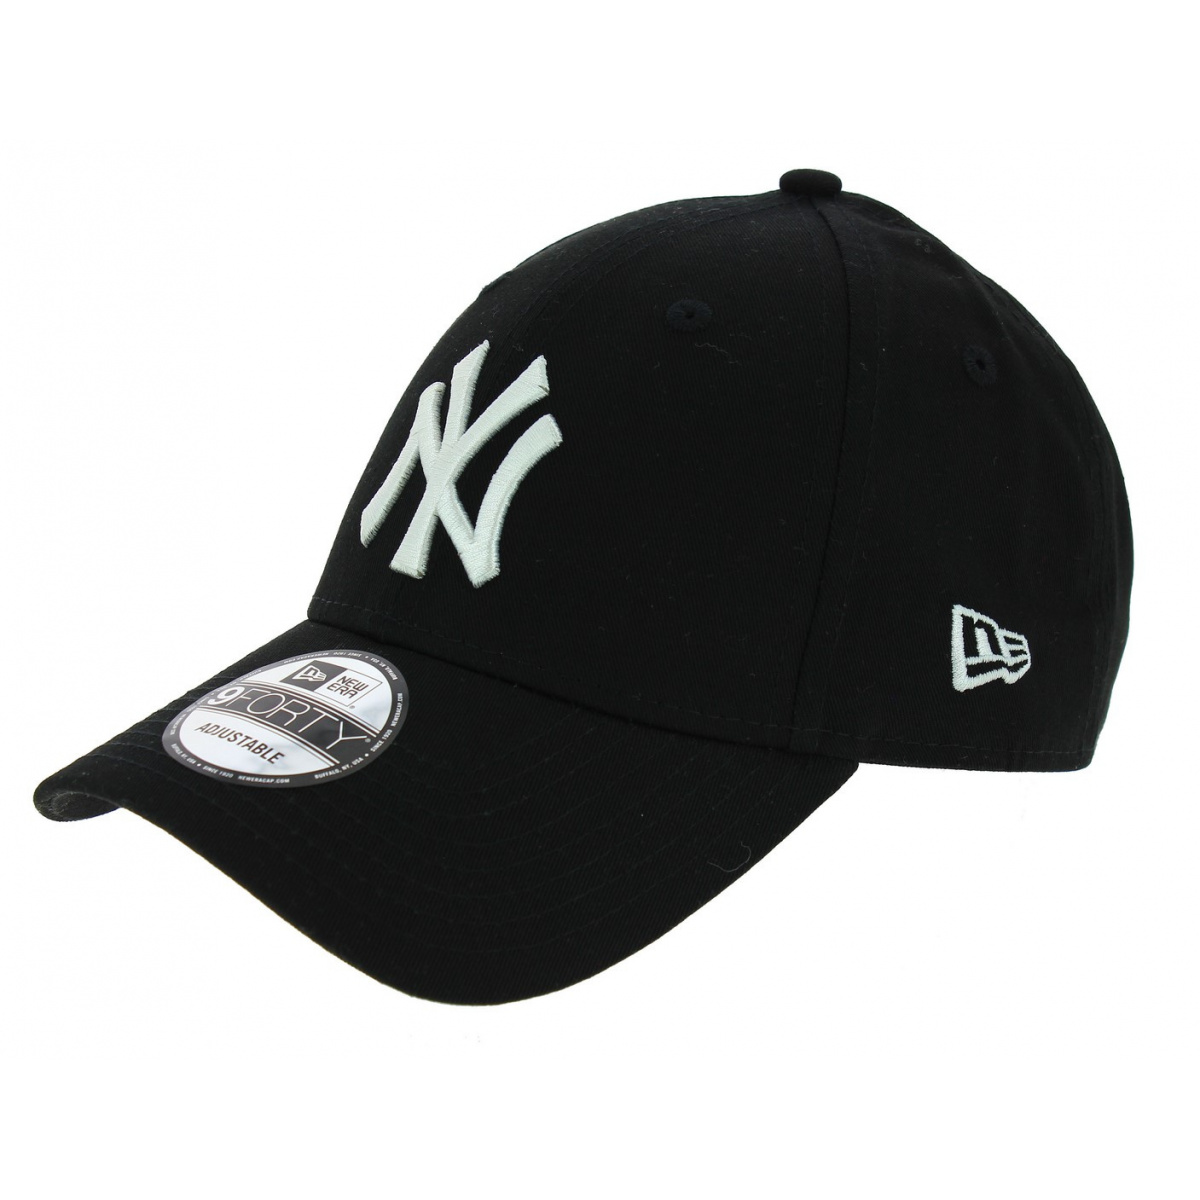 Véritable Casquette Baseball New-York Noir - New Era Reference